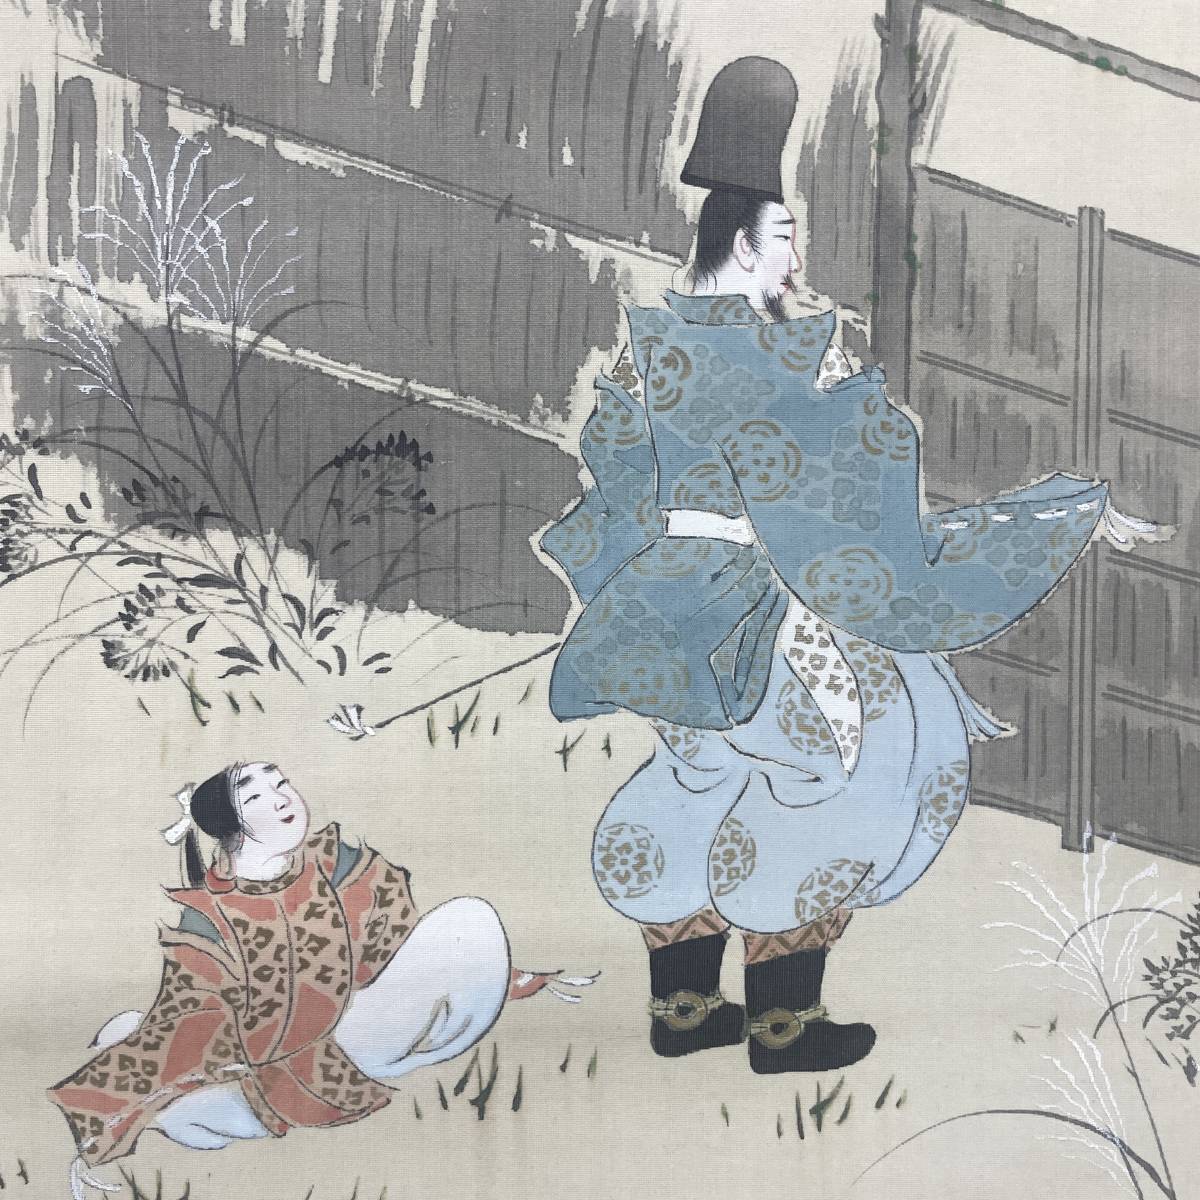 [Auténtico] //Yamamoto Koshu/Sagano/Pino/Hierbas de otoño/Hojas de arce/Gente/Noble de la corte/Pergamino colgante de Hoteiya A-315, Cuadro, pintura japonesa, persona, Bodhisattva